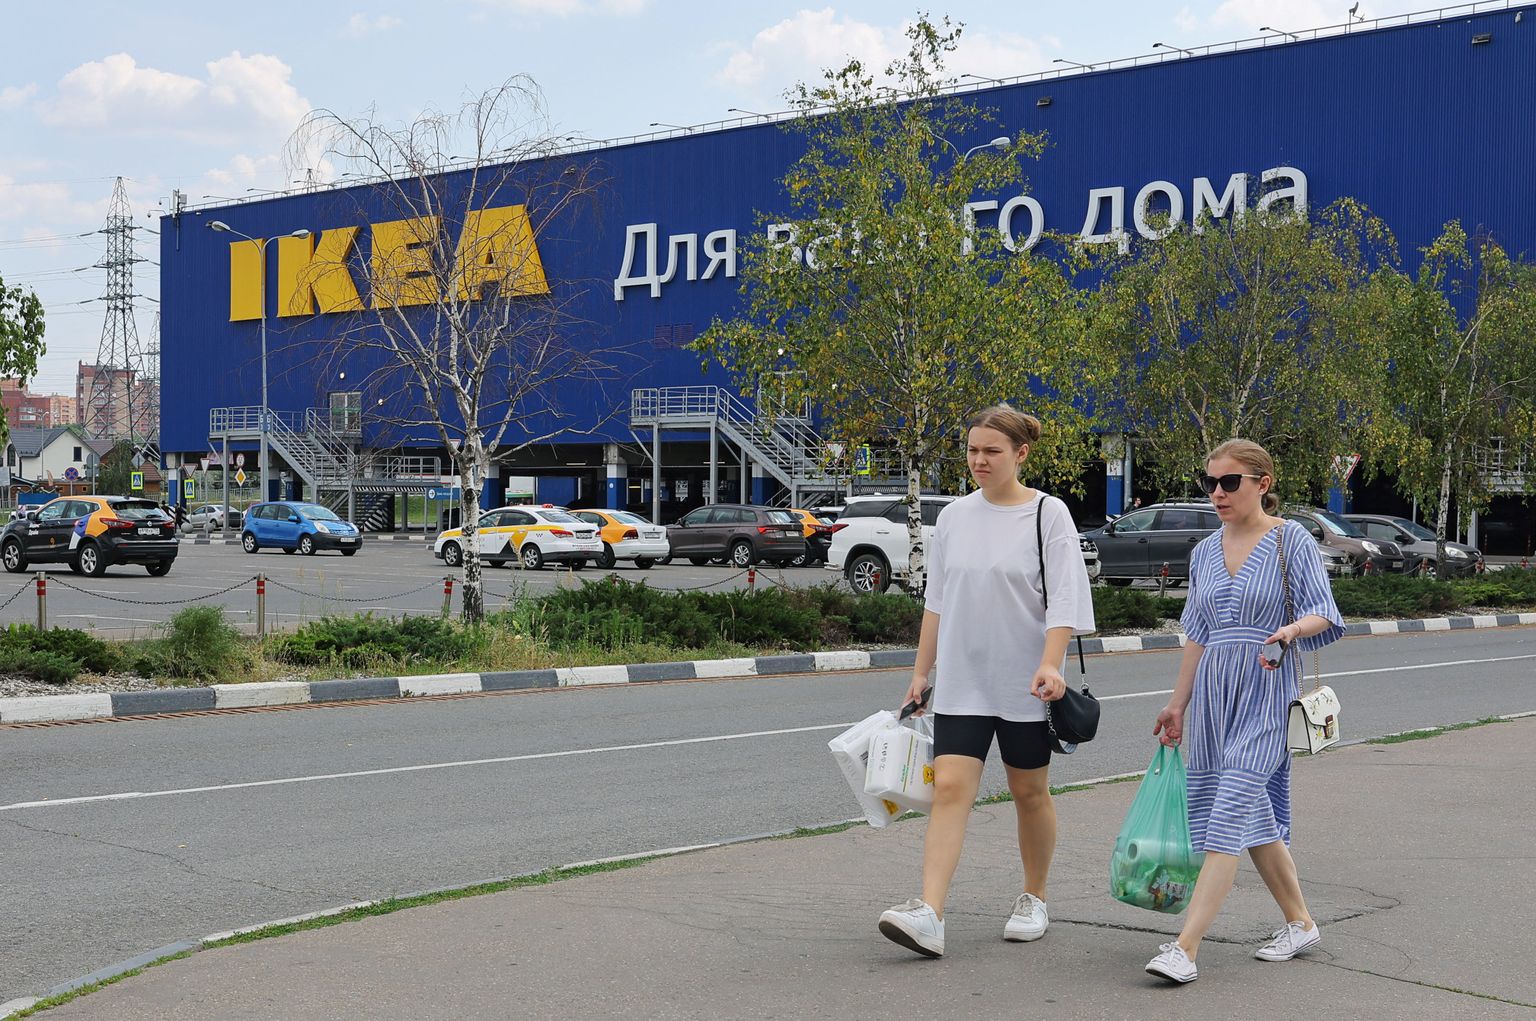 Suletud IKEA kauplus Venemaal.